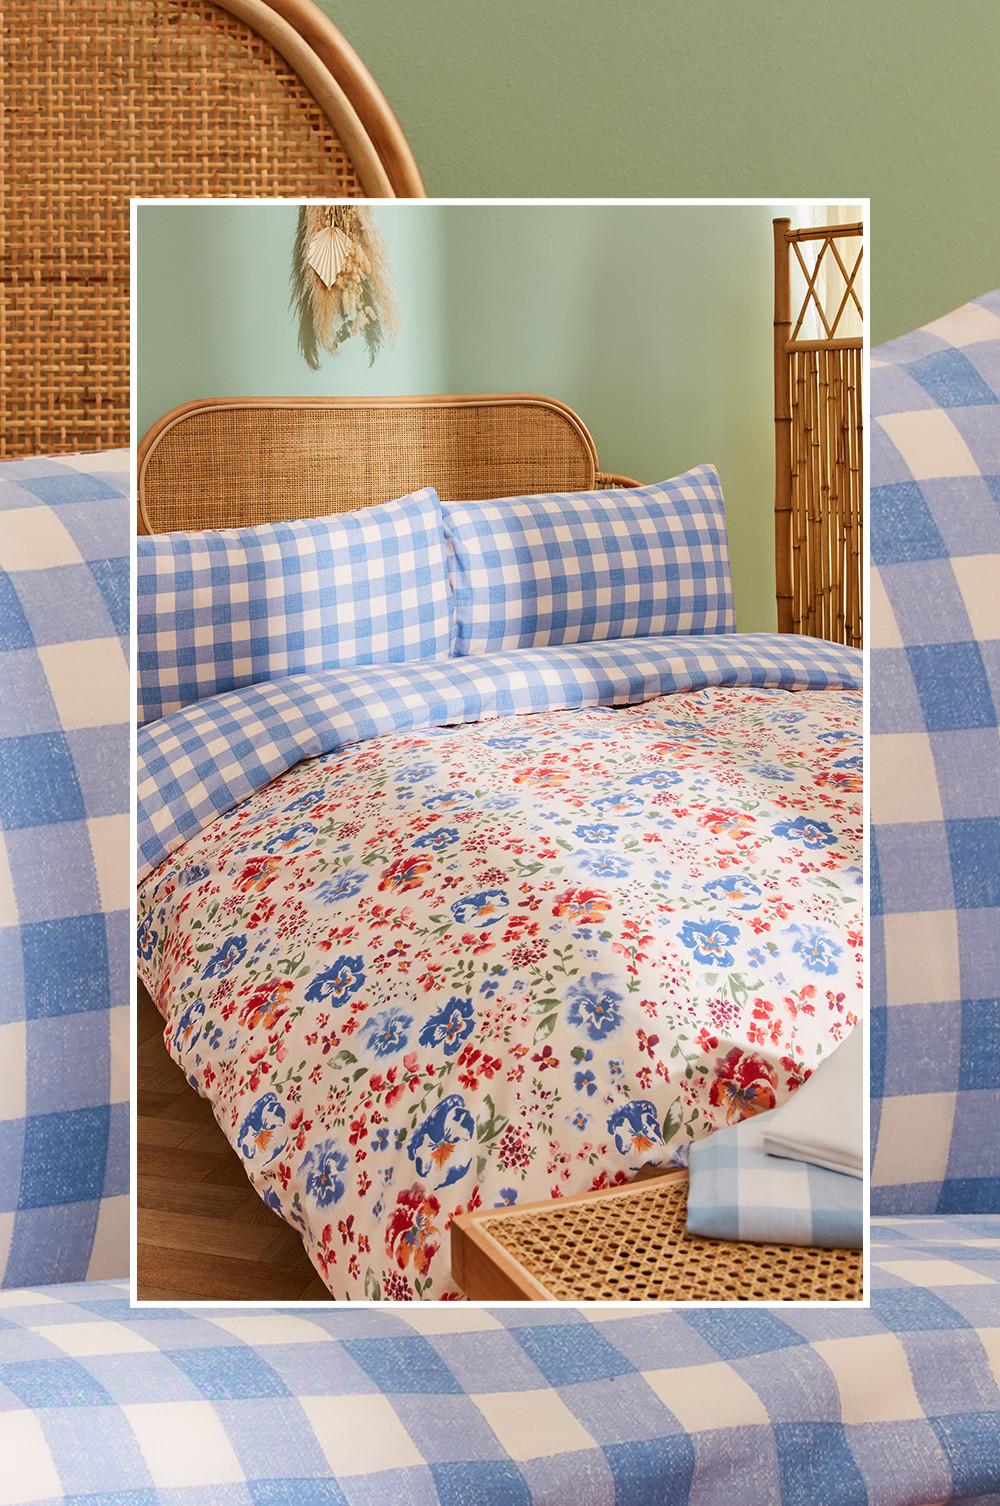 Présentation de chambre avec parure de lit à carreaux vichy bleus et blancs